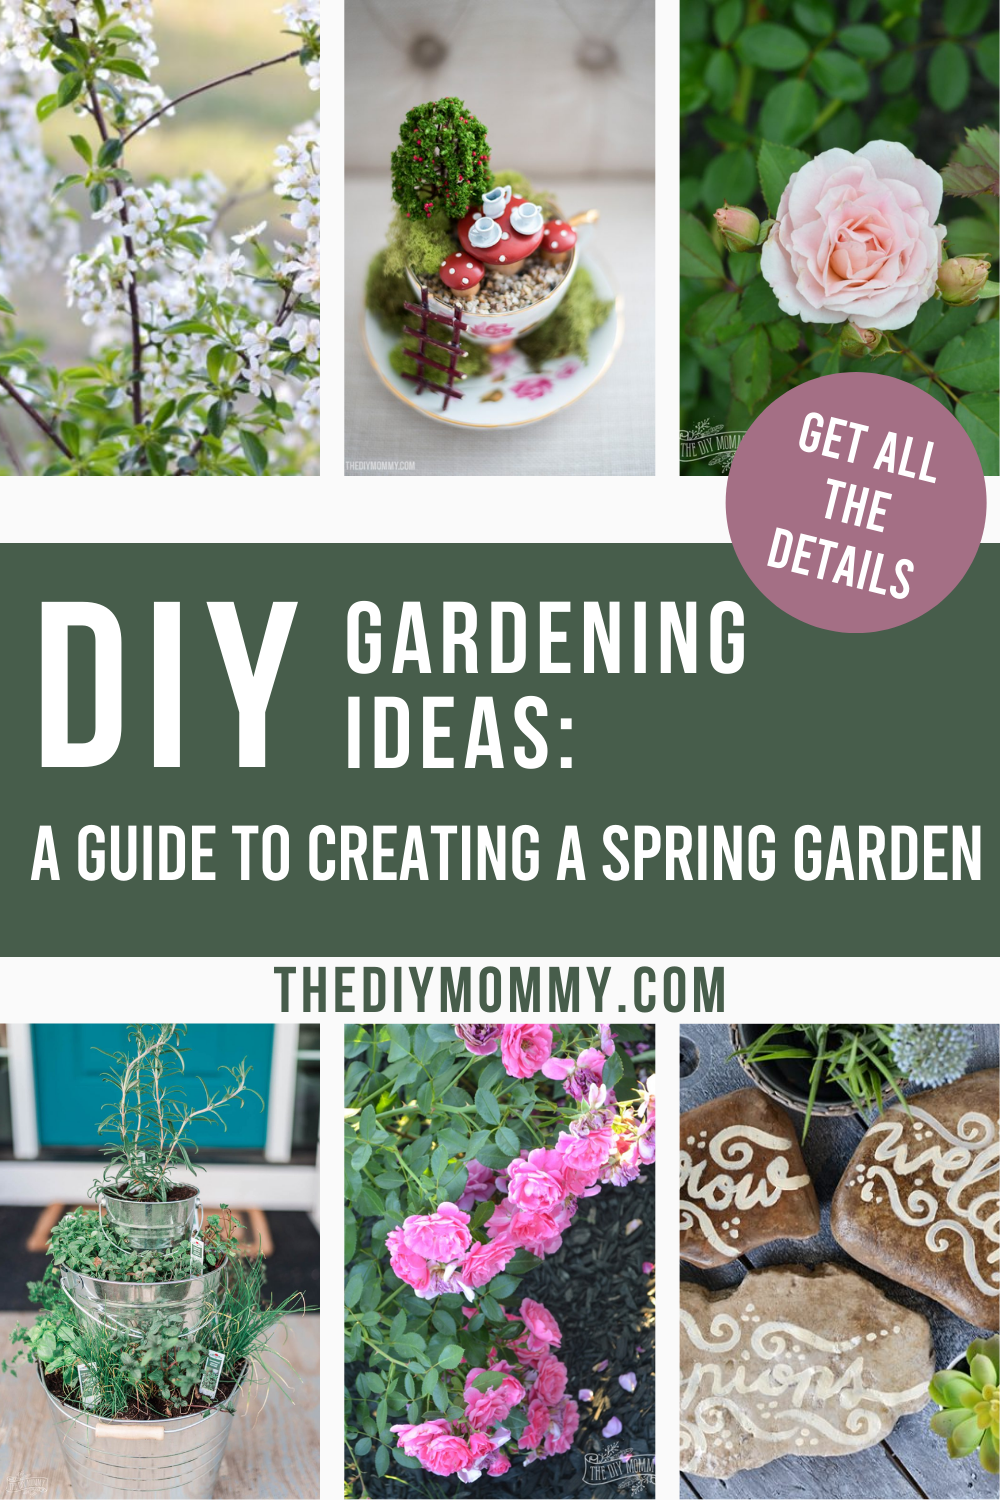 DIY Gardening Ideas: A Guide to Creating a Spring Garden